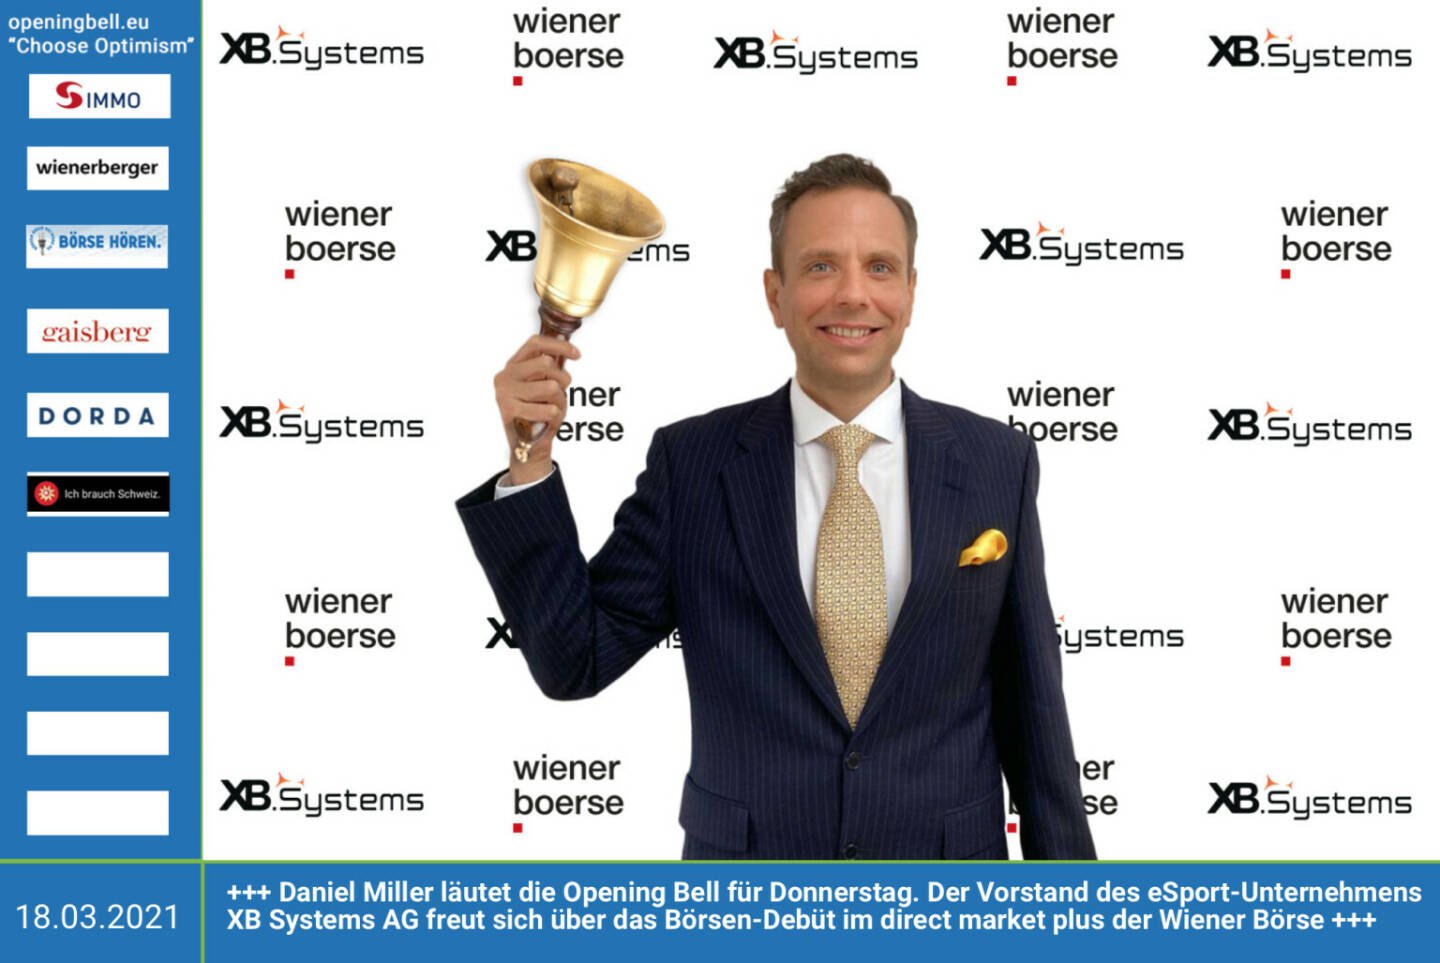 18.3.: Daniel Miller läutet die Opening Bell für Donnerstag. Der Vorstand des eSport-Unternehmens XB Systems AG freut sich über das Börsen-Debüt im direct market plus der Wiener Börse. https://www.facebook.com/chooseoptimism/ 